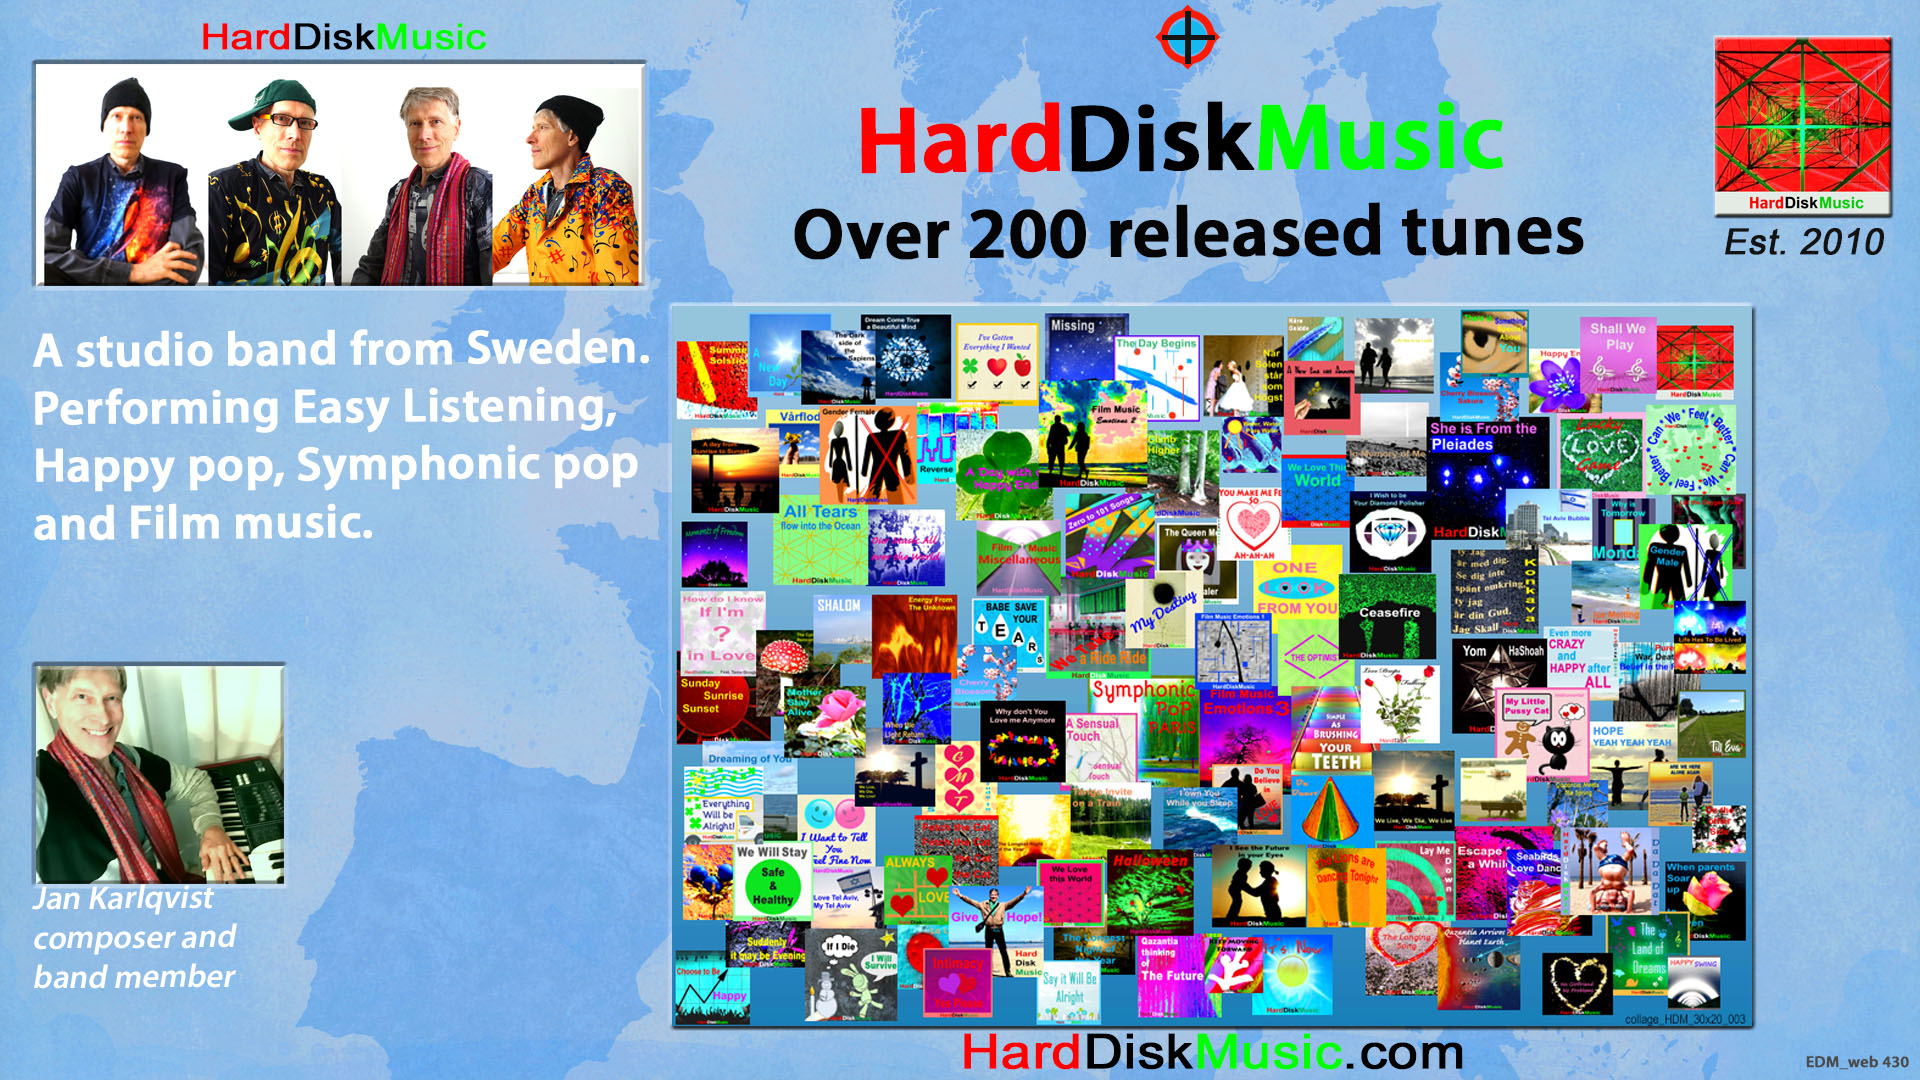 Music band HardDiskMusic from Sweden